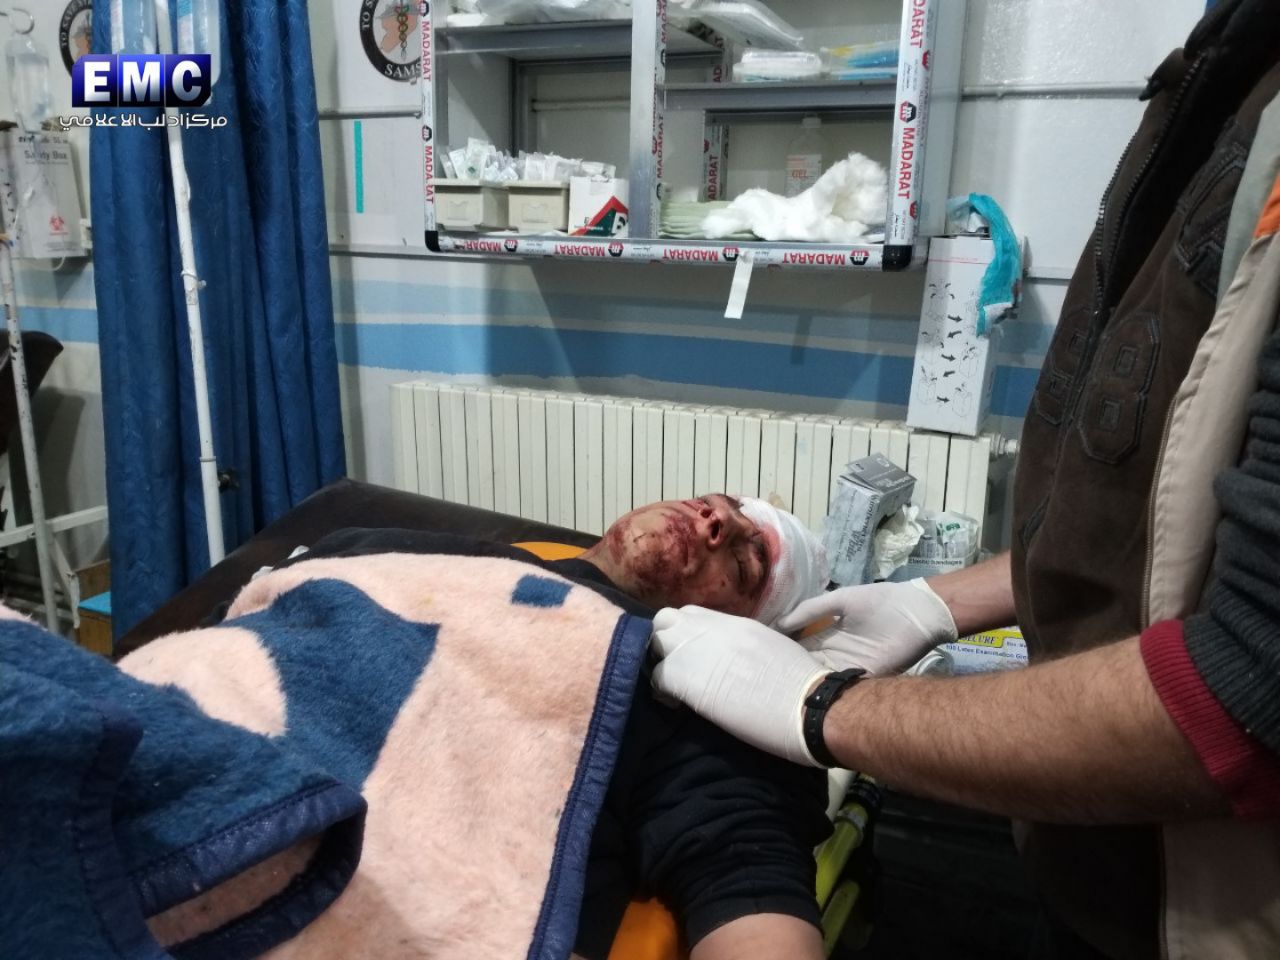 نشرة أخبار الجمعة- انفجار سيارة مفخخة قرب حاجز لتحرير الشام جنوبي إدلب، وسقوط ضحايا في قصف لقوات النظام شمالي حماة -(18-1-2019)